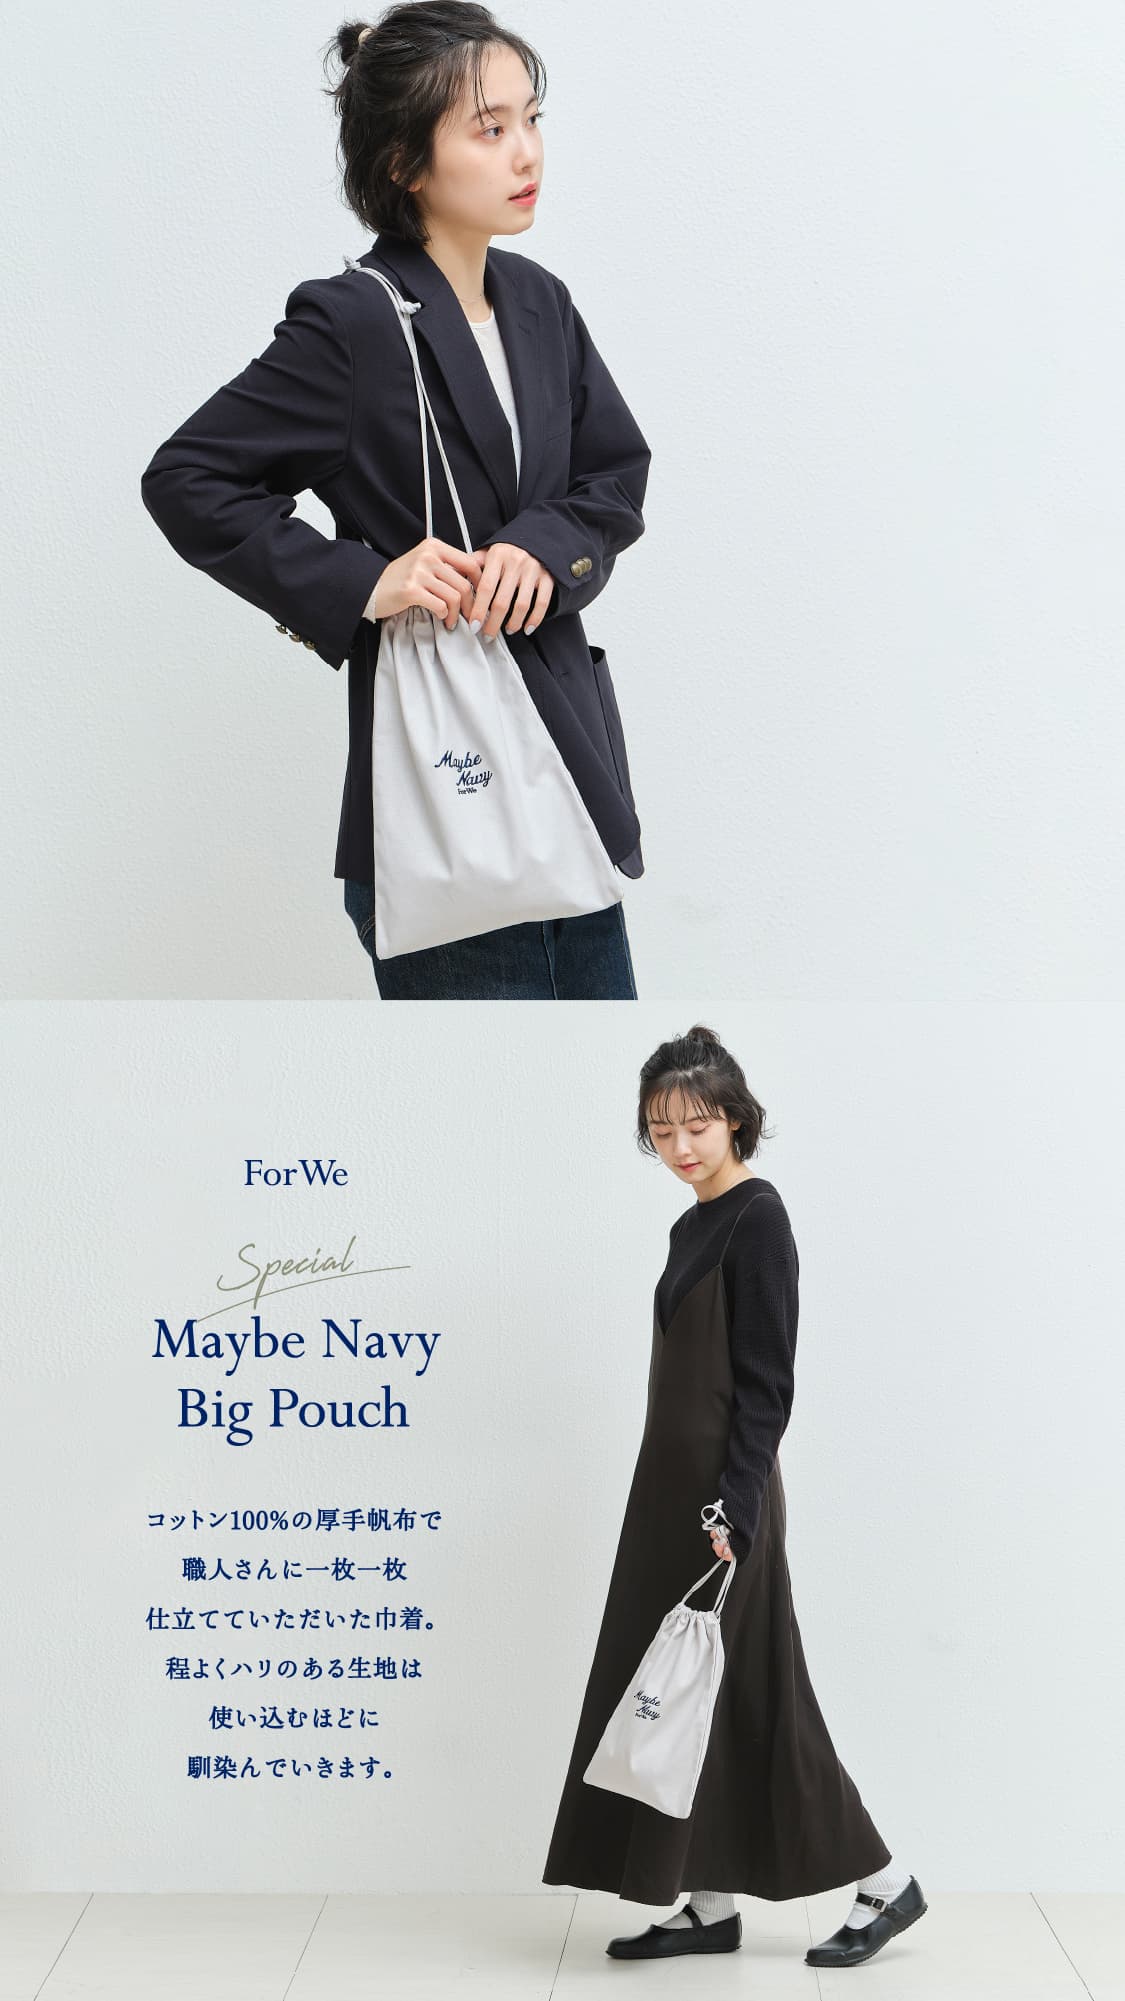 ForWe Special Maybe Navy Big Pouch コットン100%の厚手帆布で職人さんに一枚一枚仕立てていただいた巾着。程よくハリのある生地は使い込むほどに馴染んでいきます。